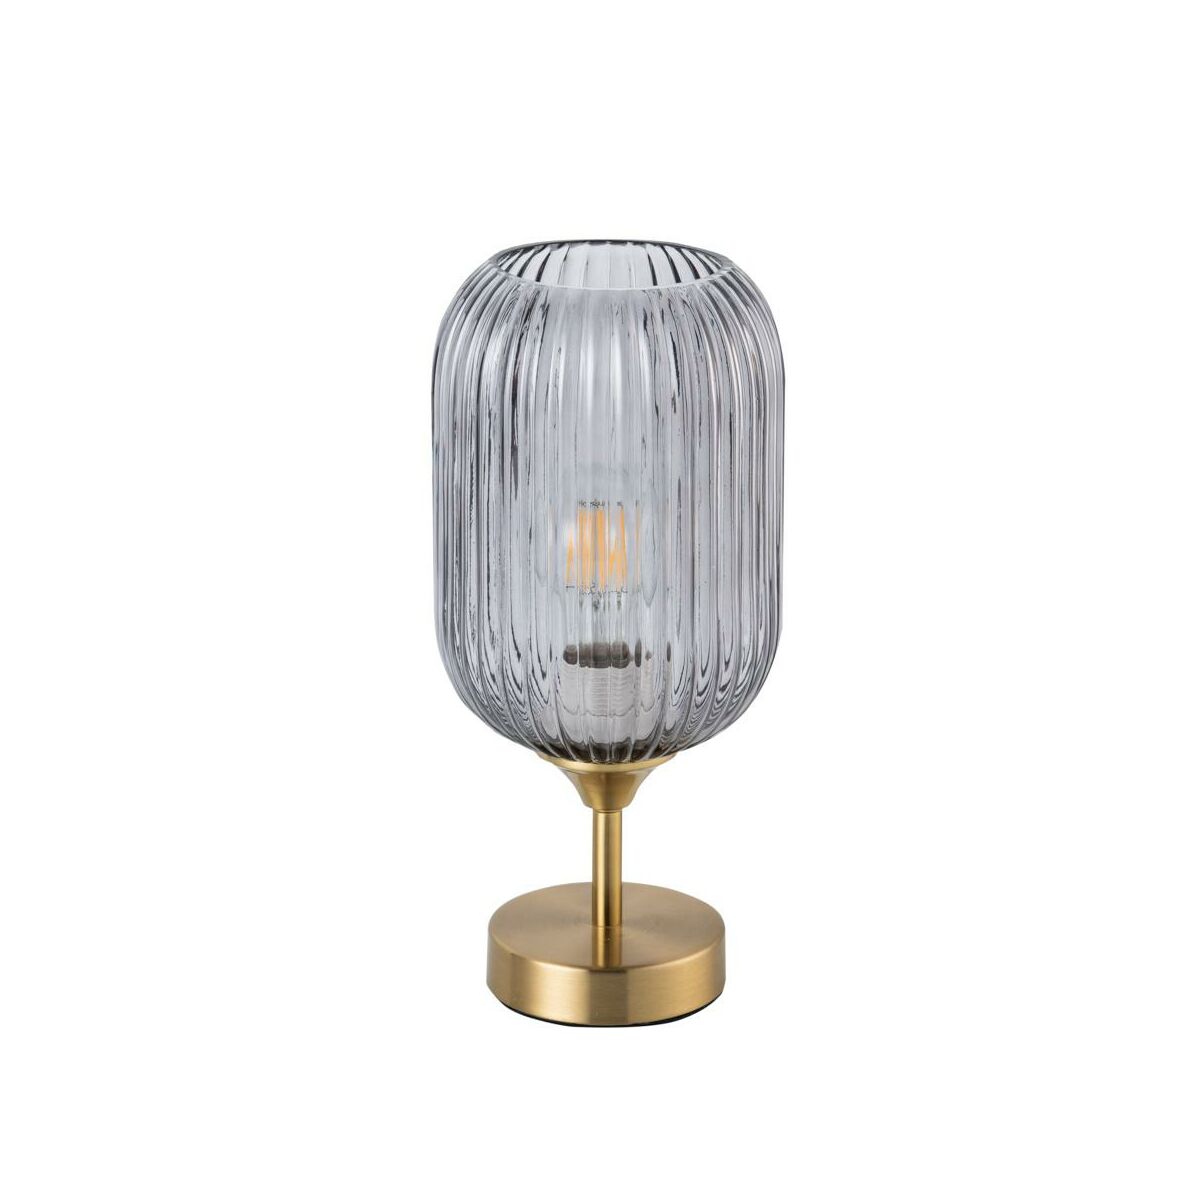 Lampa stołowa Sufflok złoto-szara E27 Polux